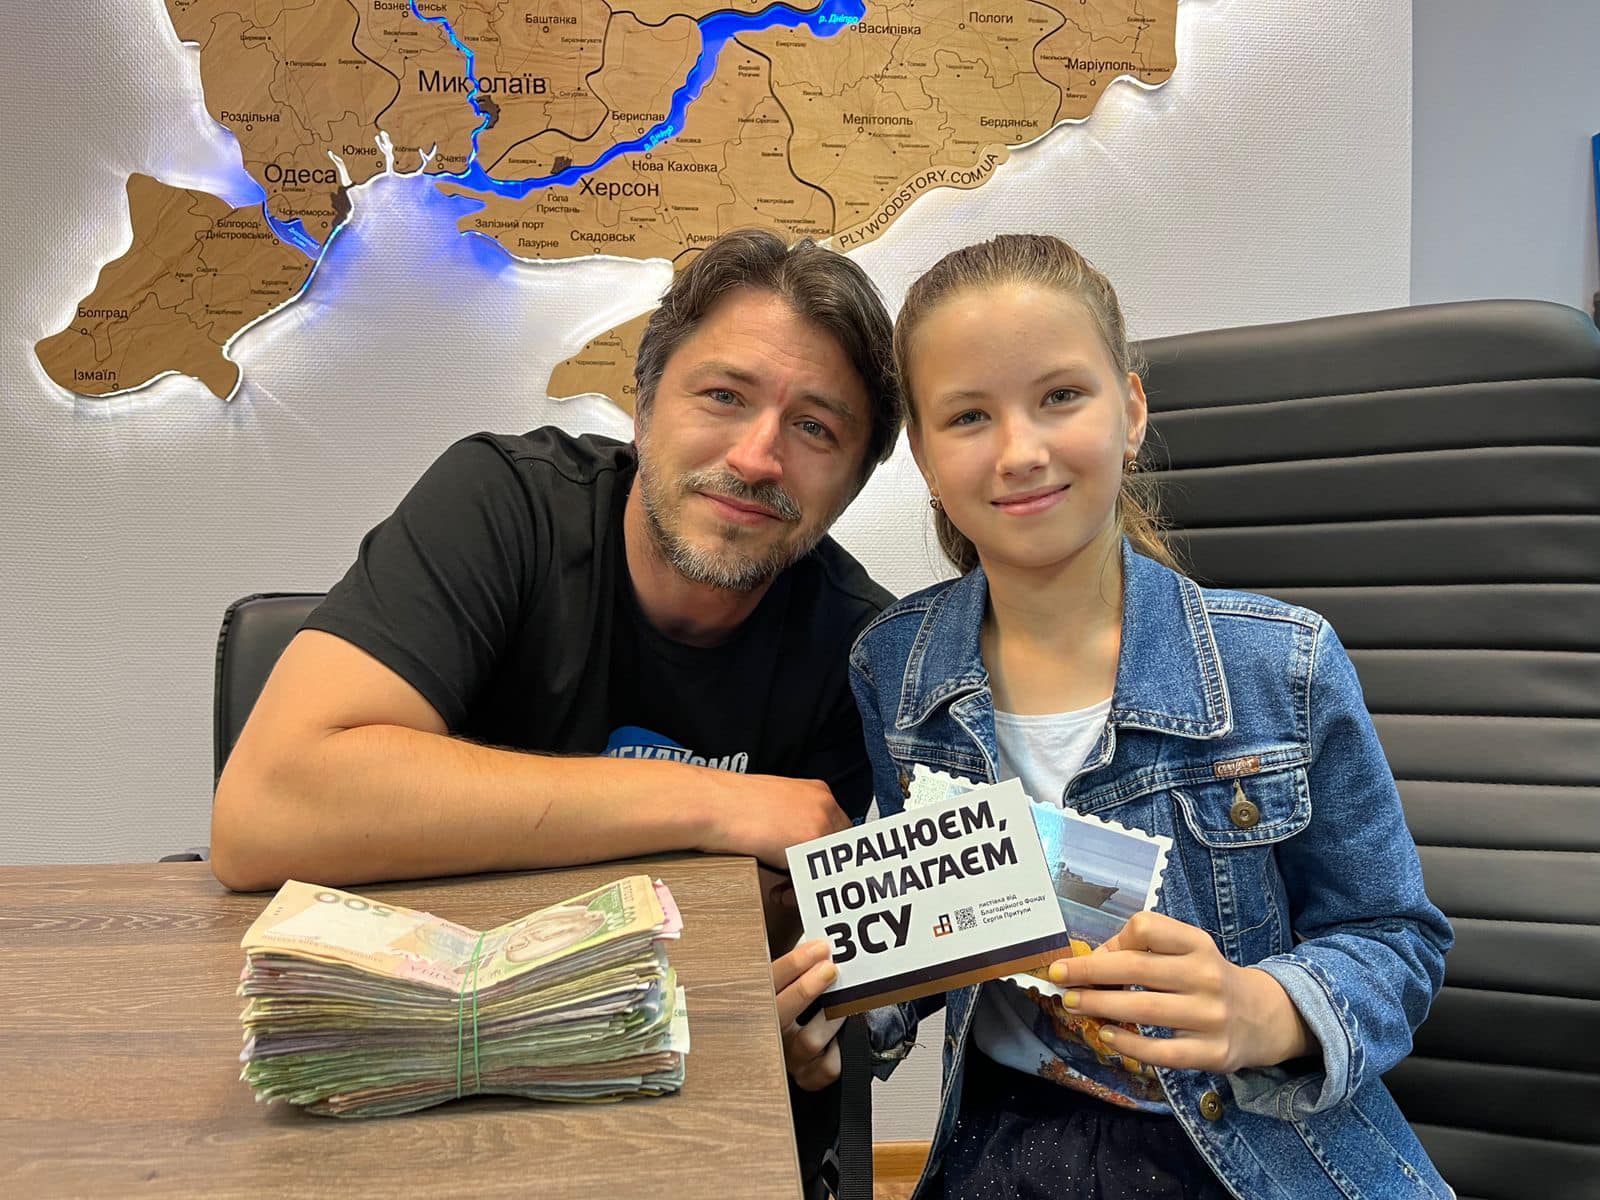 Little heroes: Children raise money to support Ukraine’s fight